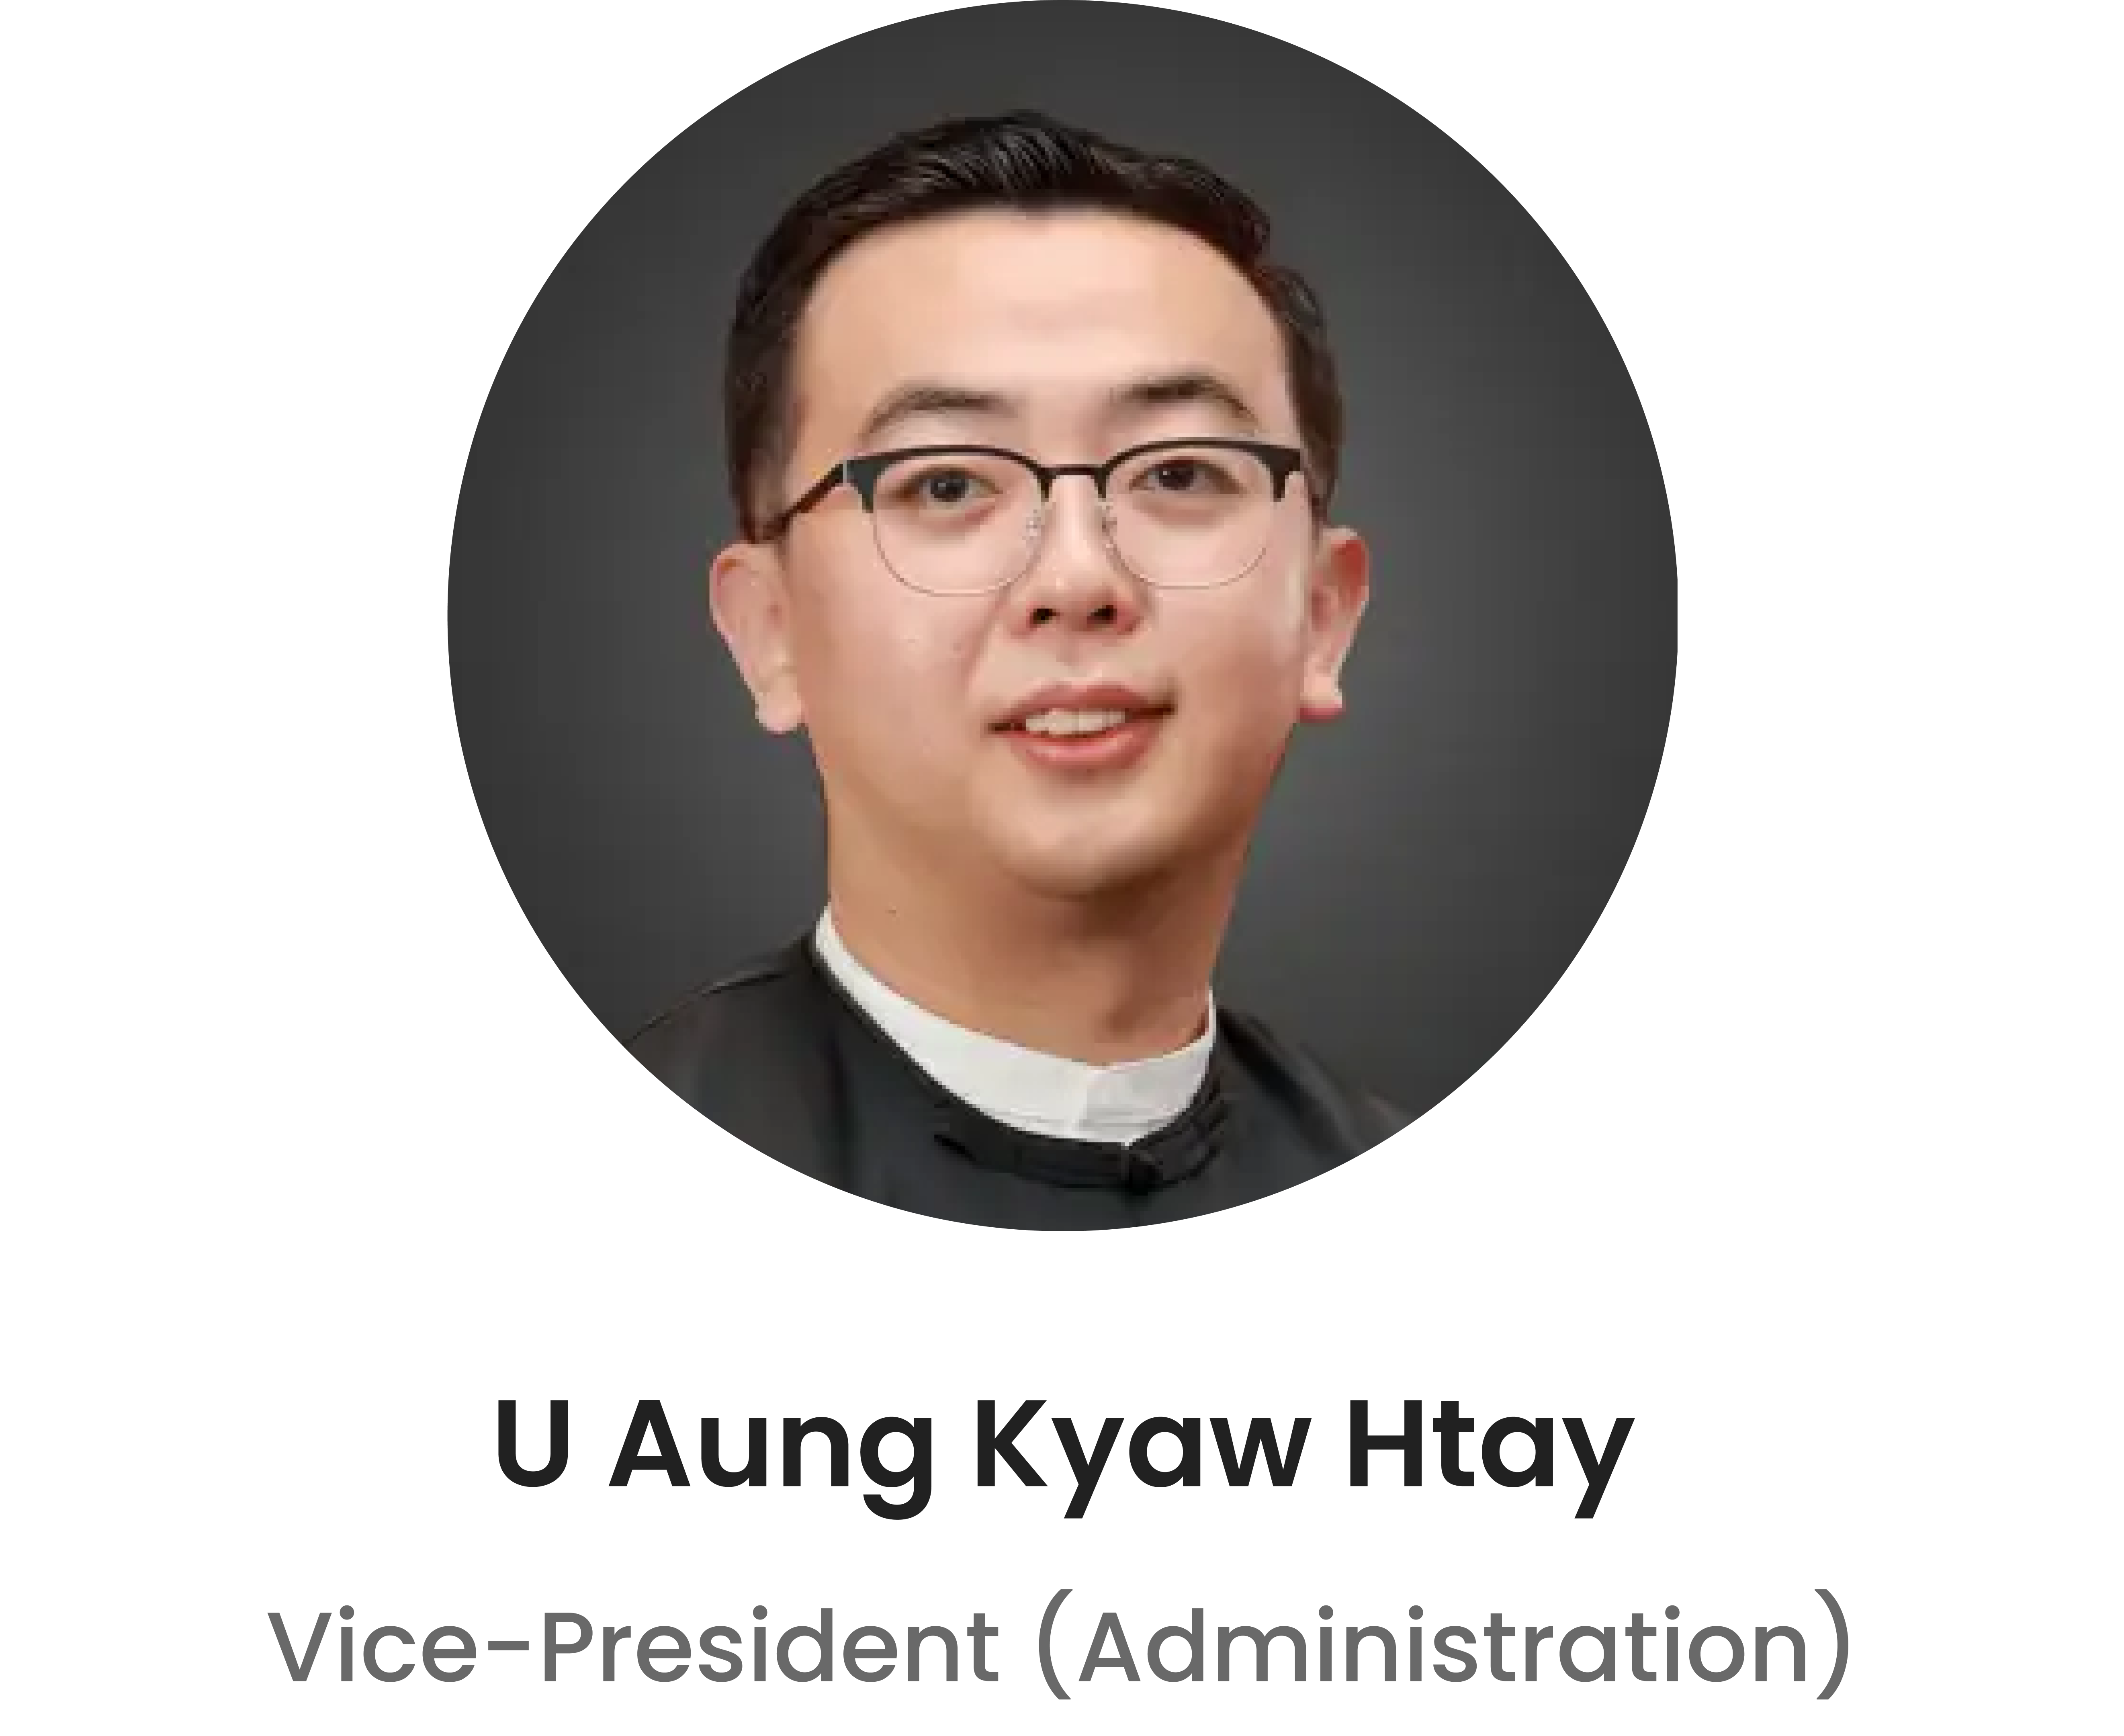 U Aung Kyaw Htay